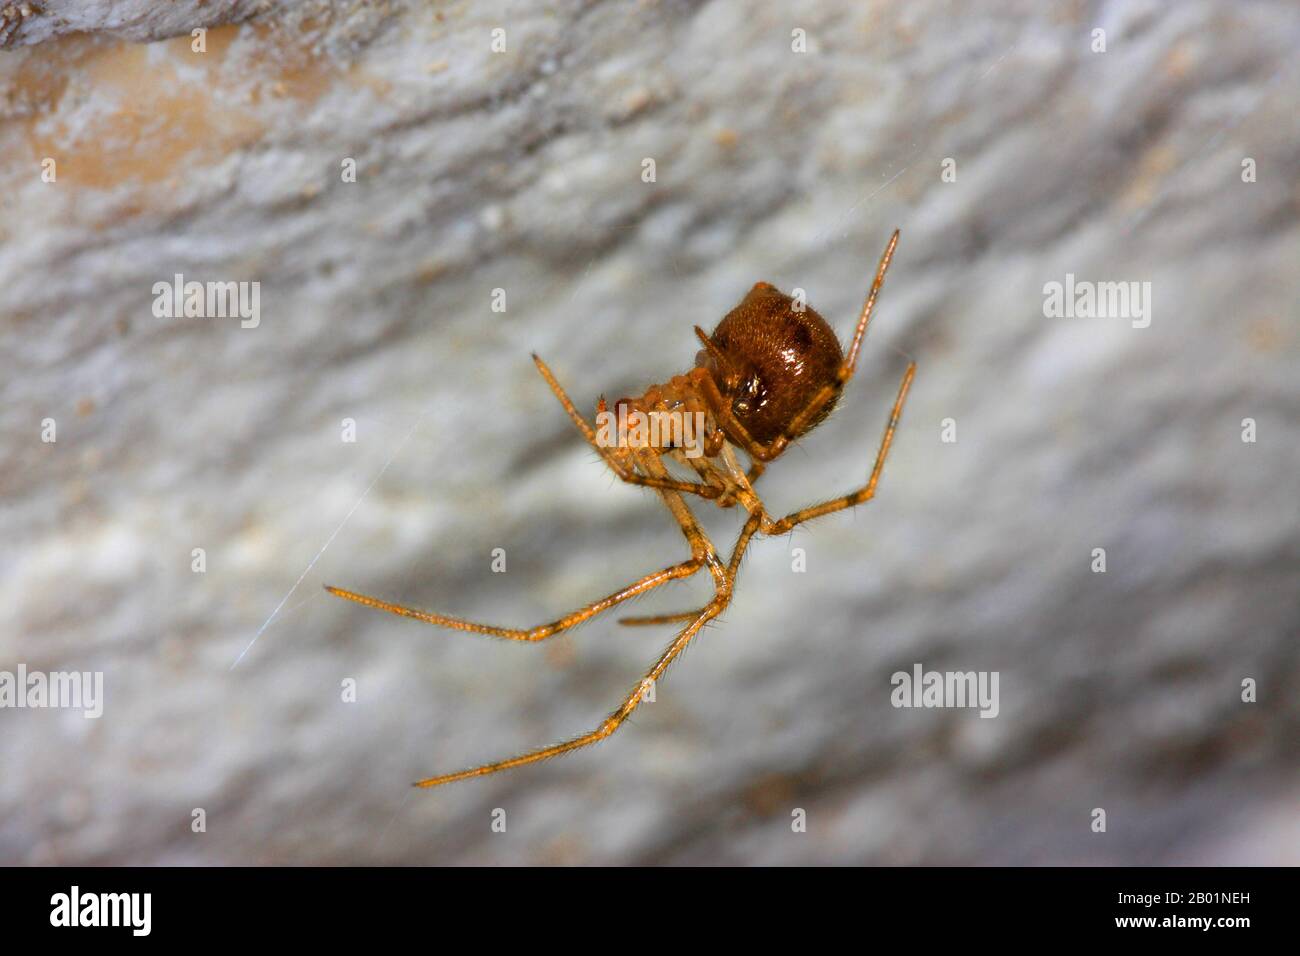 Araignée cellulaire à pieds peignés (Nesticus eremita), en toile, Allemagne Banque D'Images